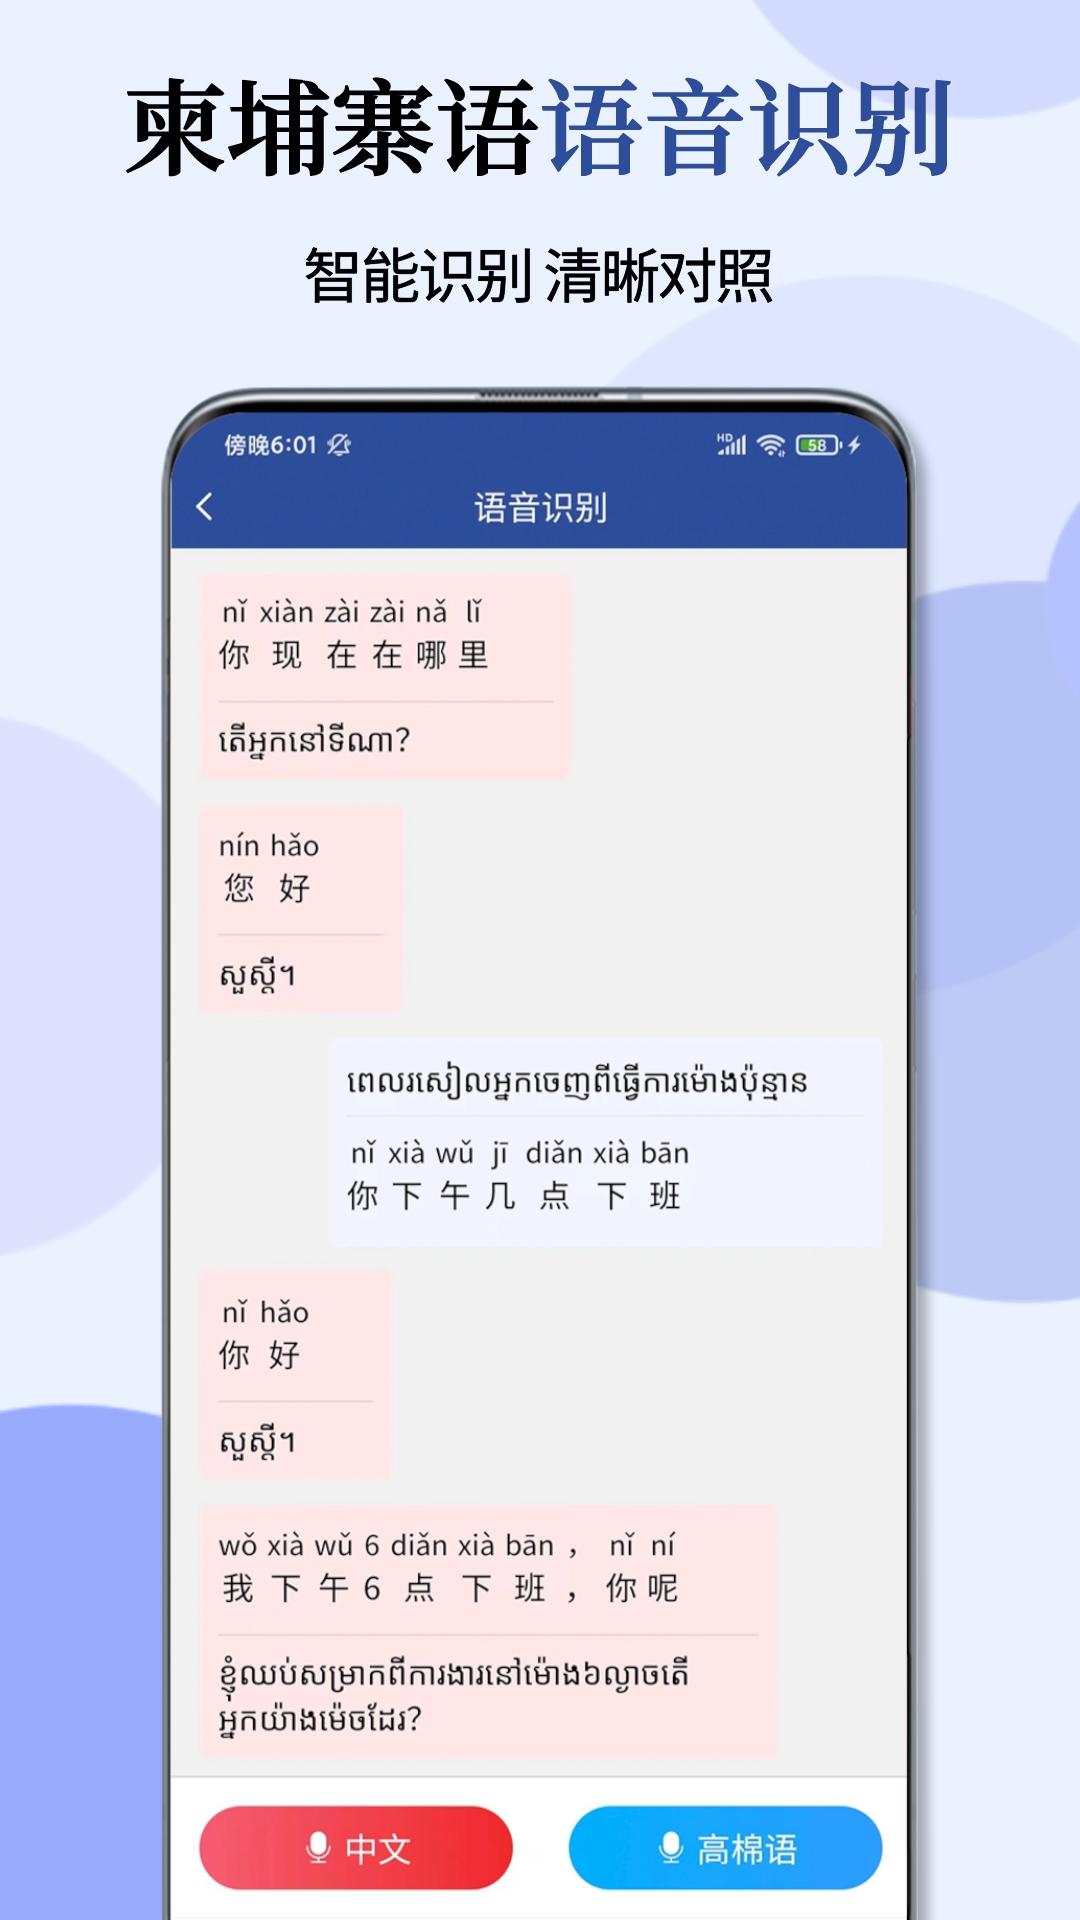 柬埔寨语翻译通